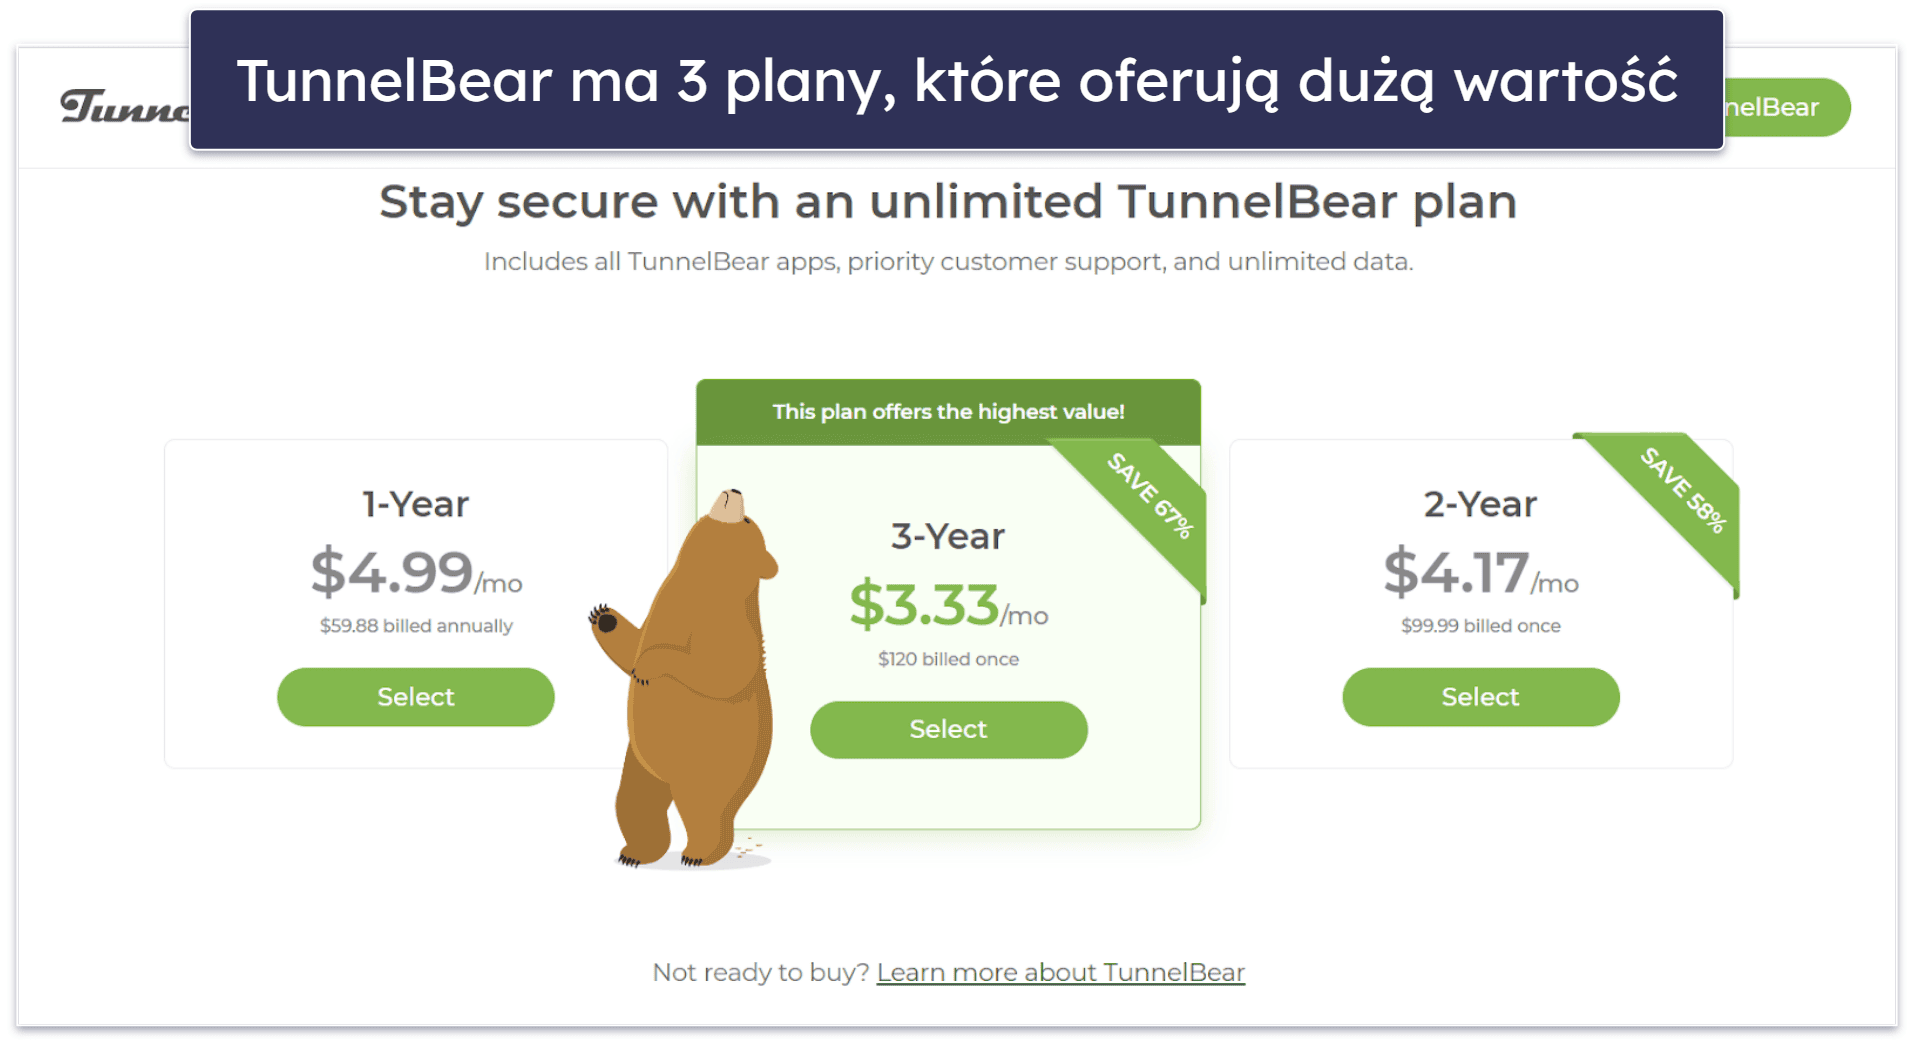 8. TunnelBear: Łatwy i przyjemny w użytkowaniu